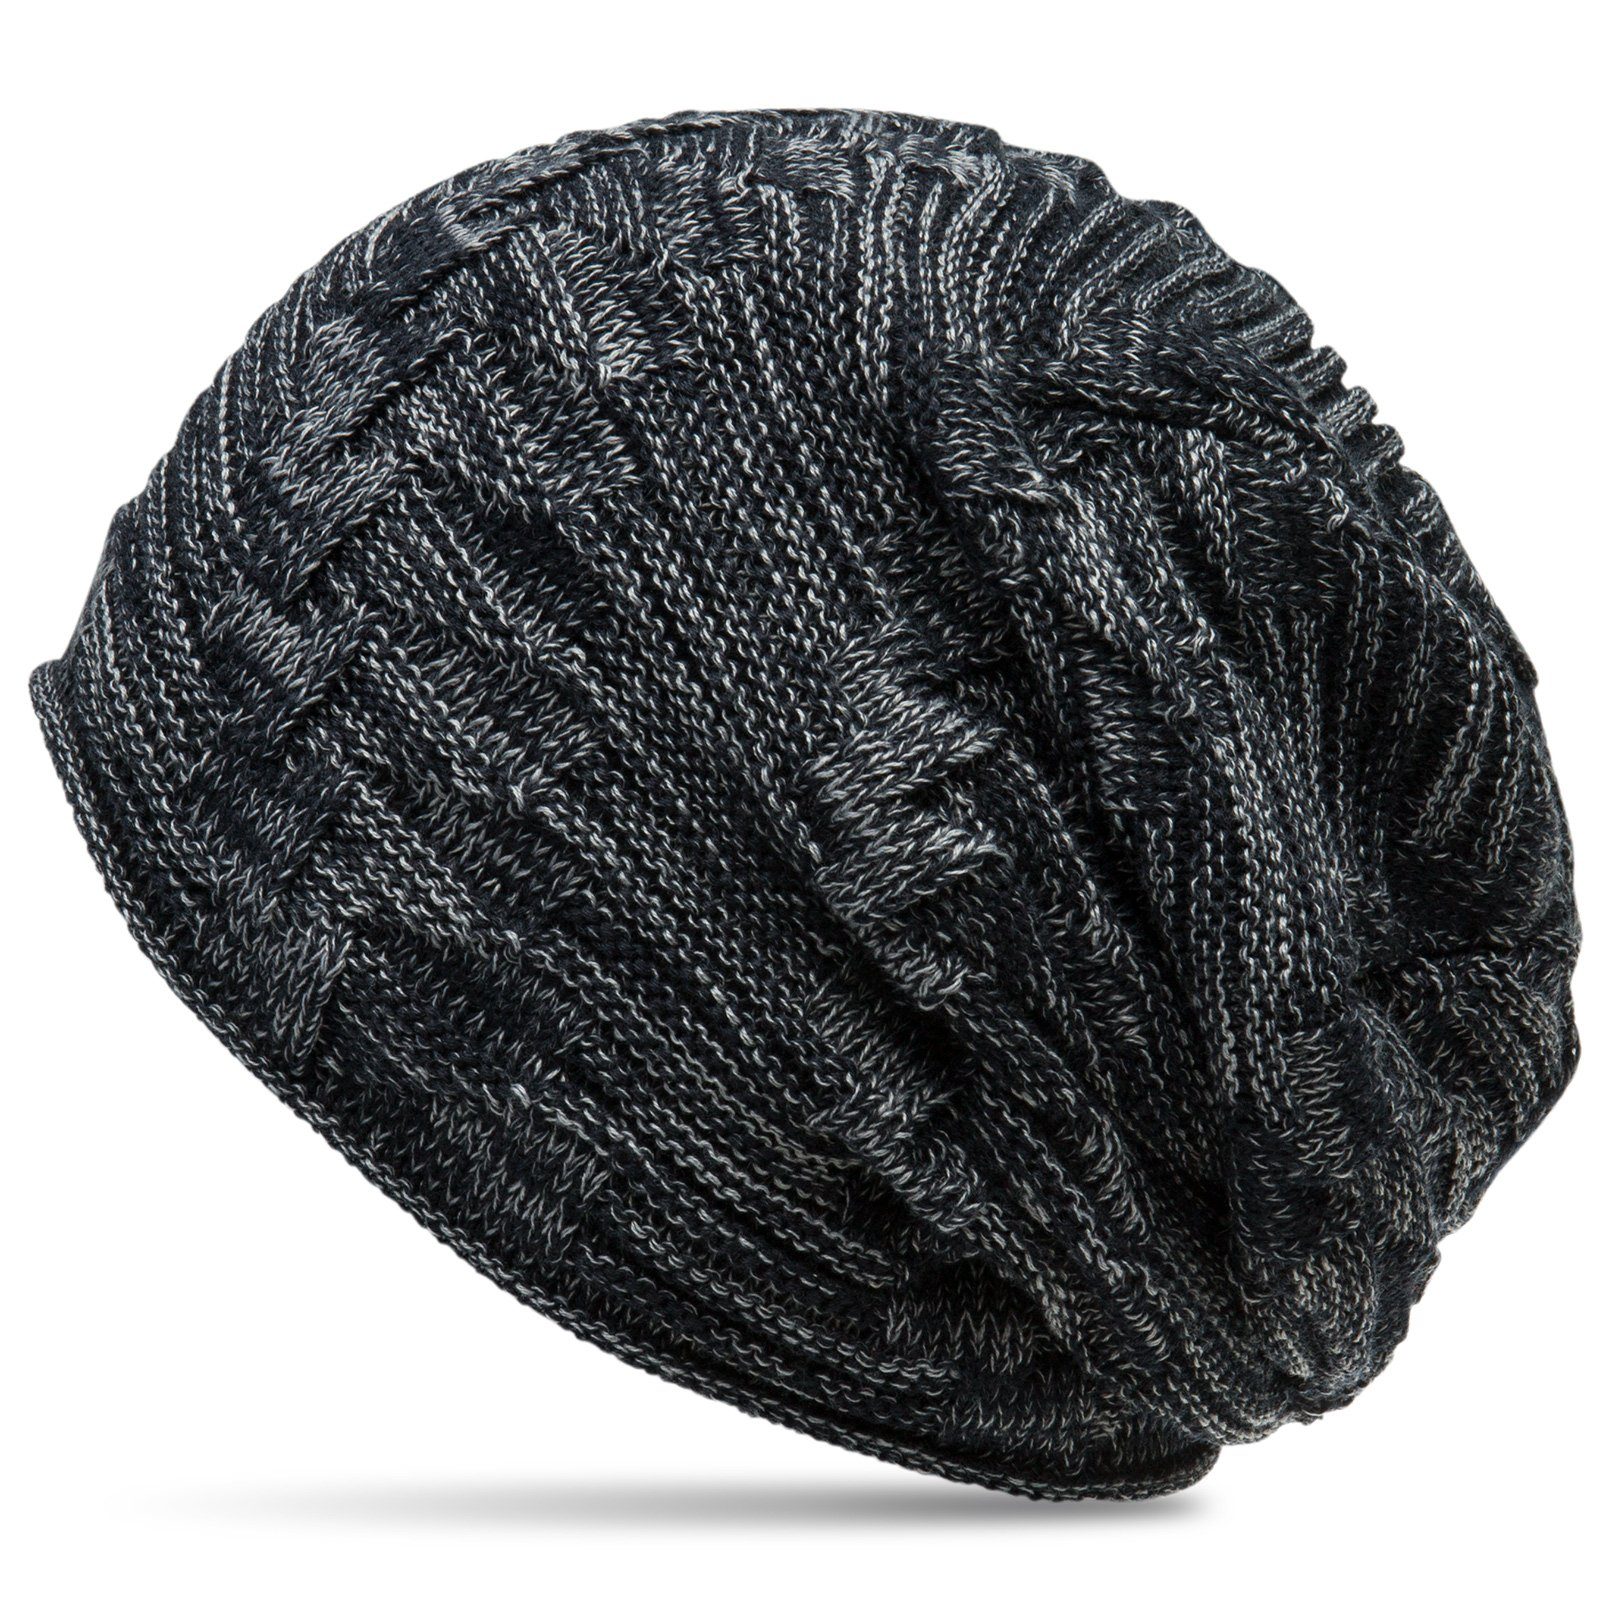 Caspar Beanie MU154 gefütterte Feinstrick Mütze mit stylischem Flecht Muster dunkelblau / grau